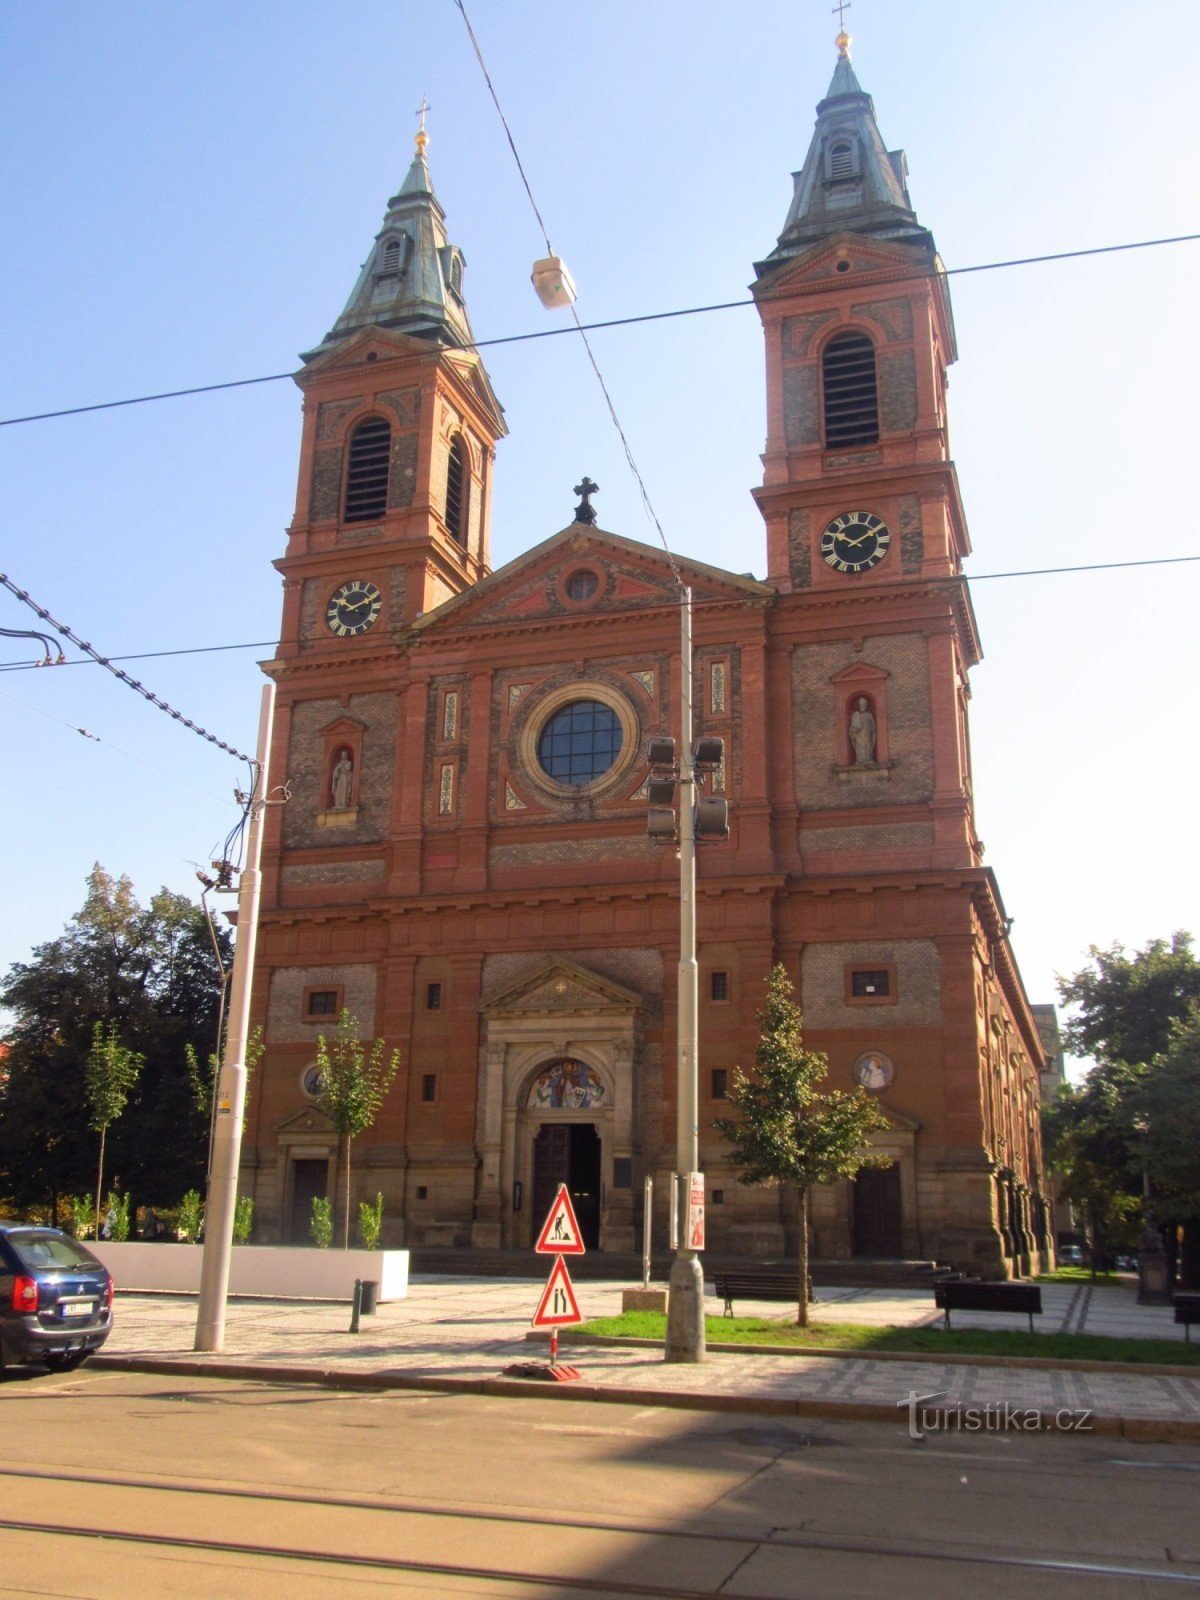 Église de St. Place Venceslas le 14 octobre à Smíchov, Prague